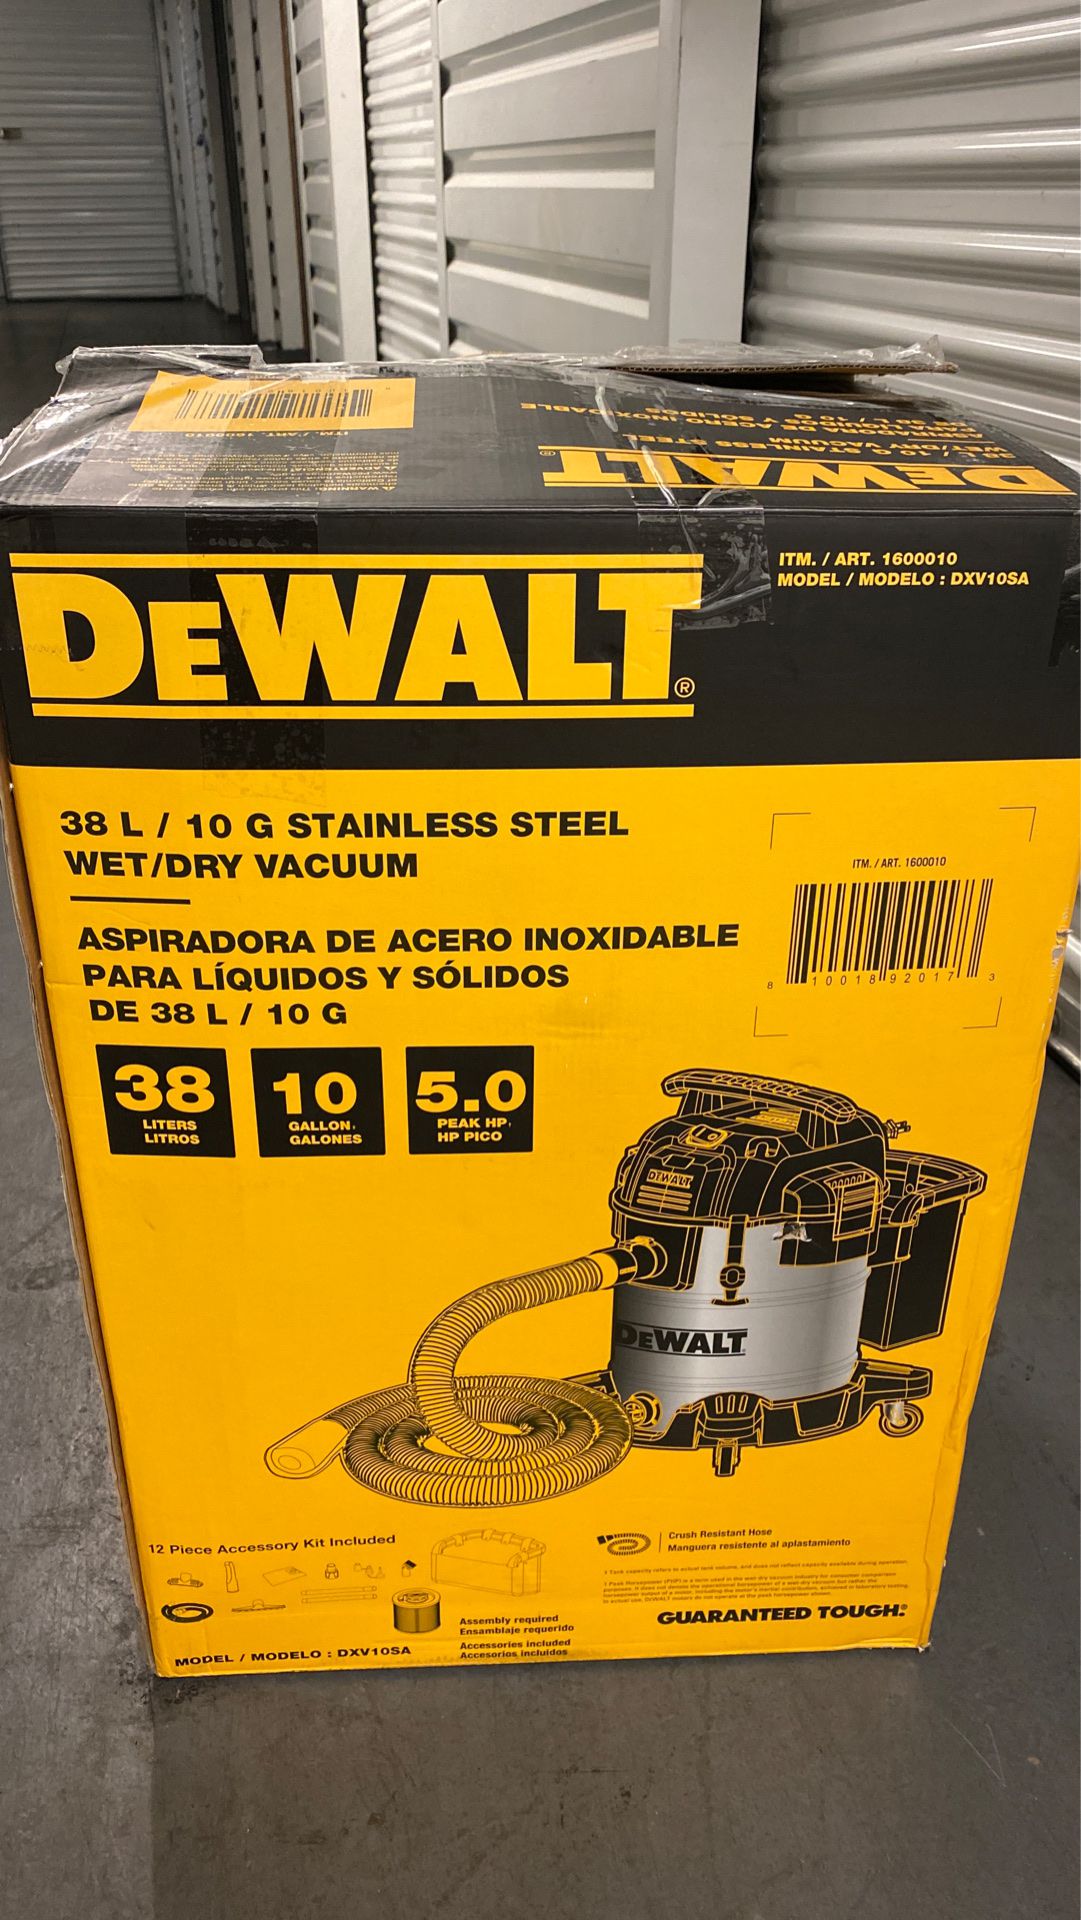 DeWALT, 10 Gallon, 5.0 HP Stainless Steel Wet/Dry Air Blower Workshop Vacuum